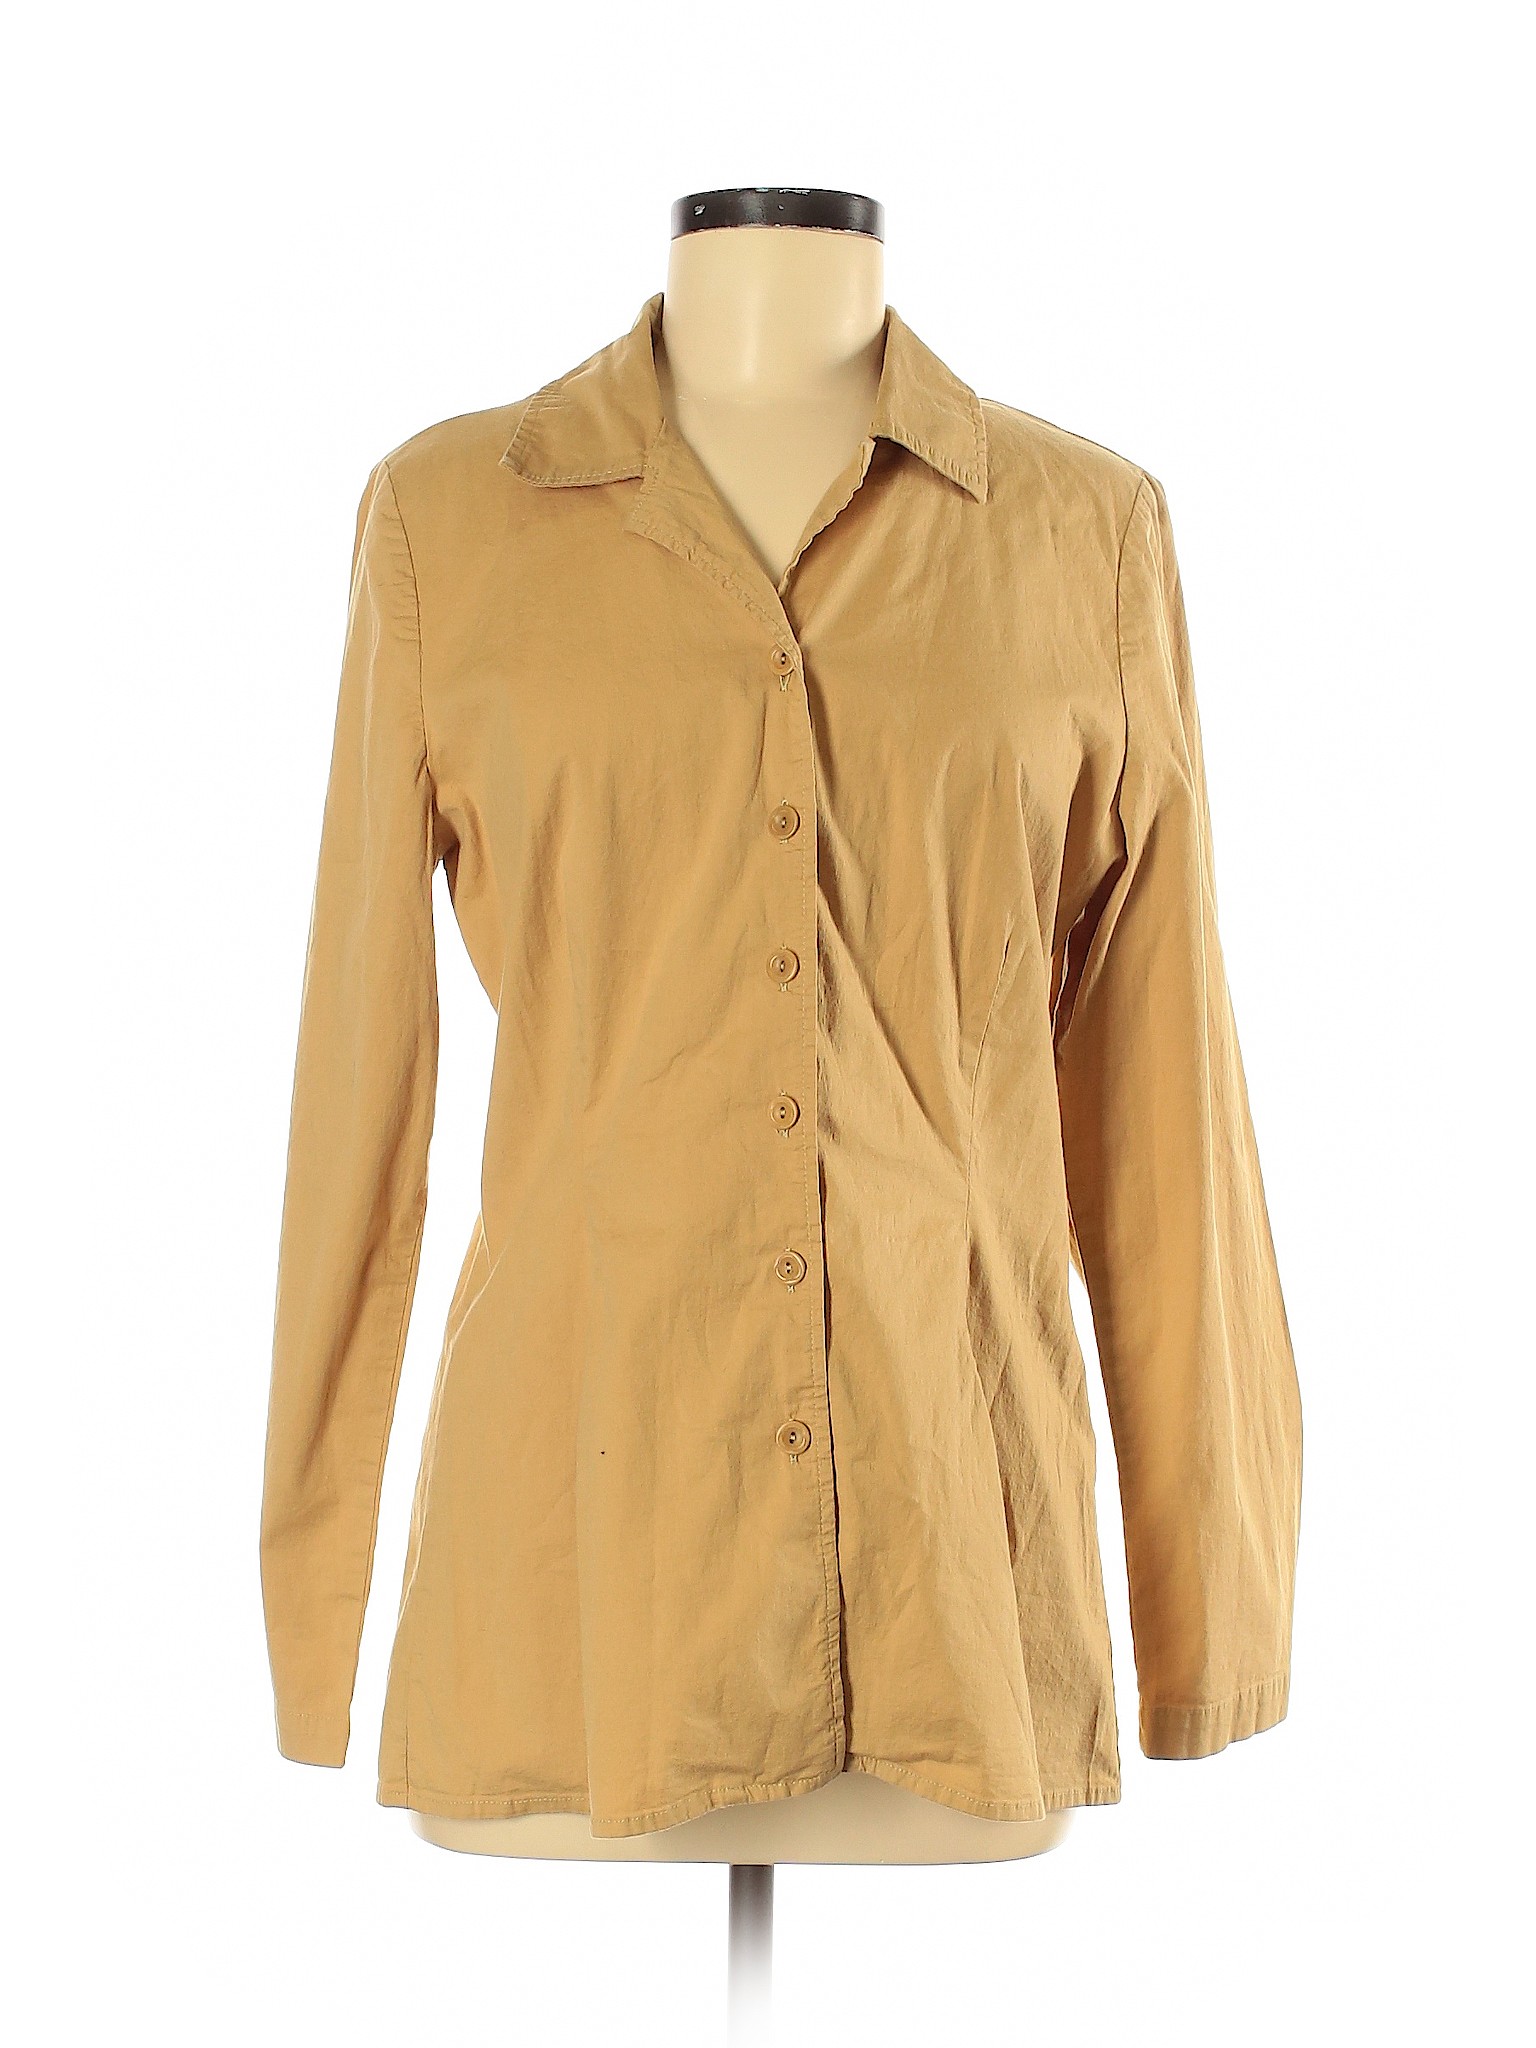 Flax Women Yellow Long Sleeve Button-Down Shirt 6 | eBay